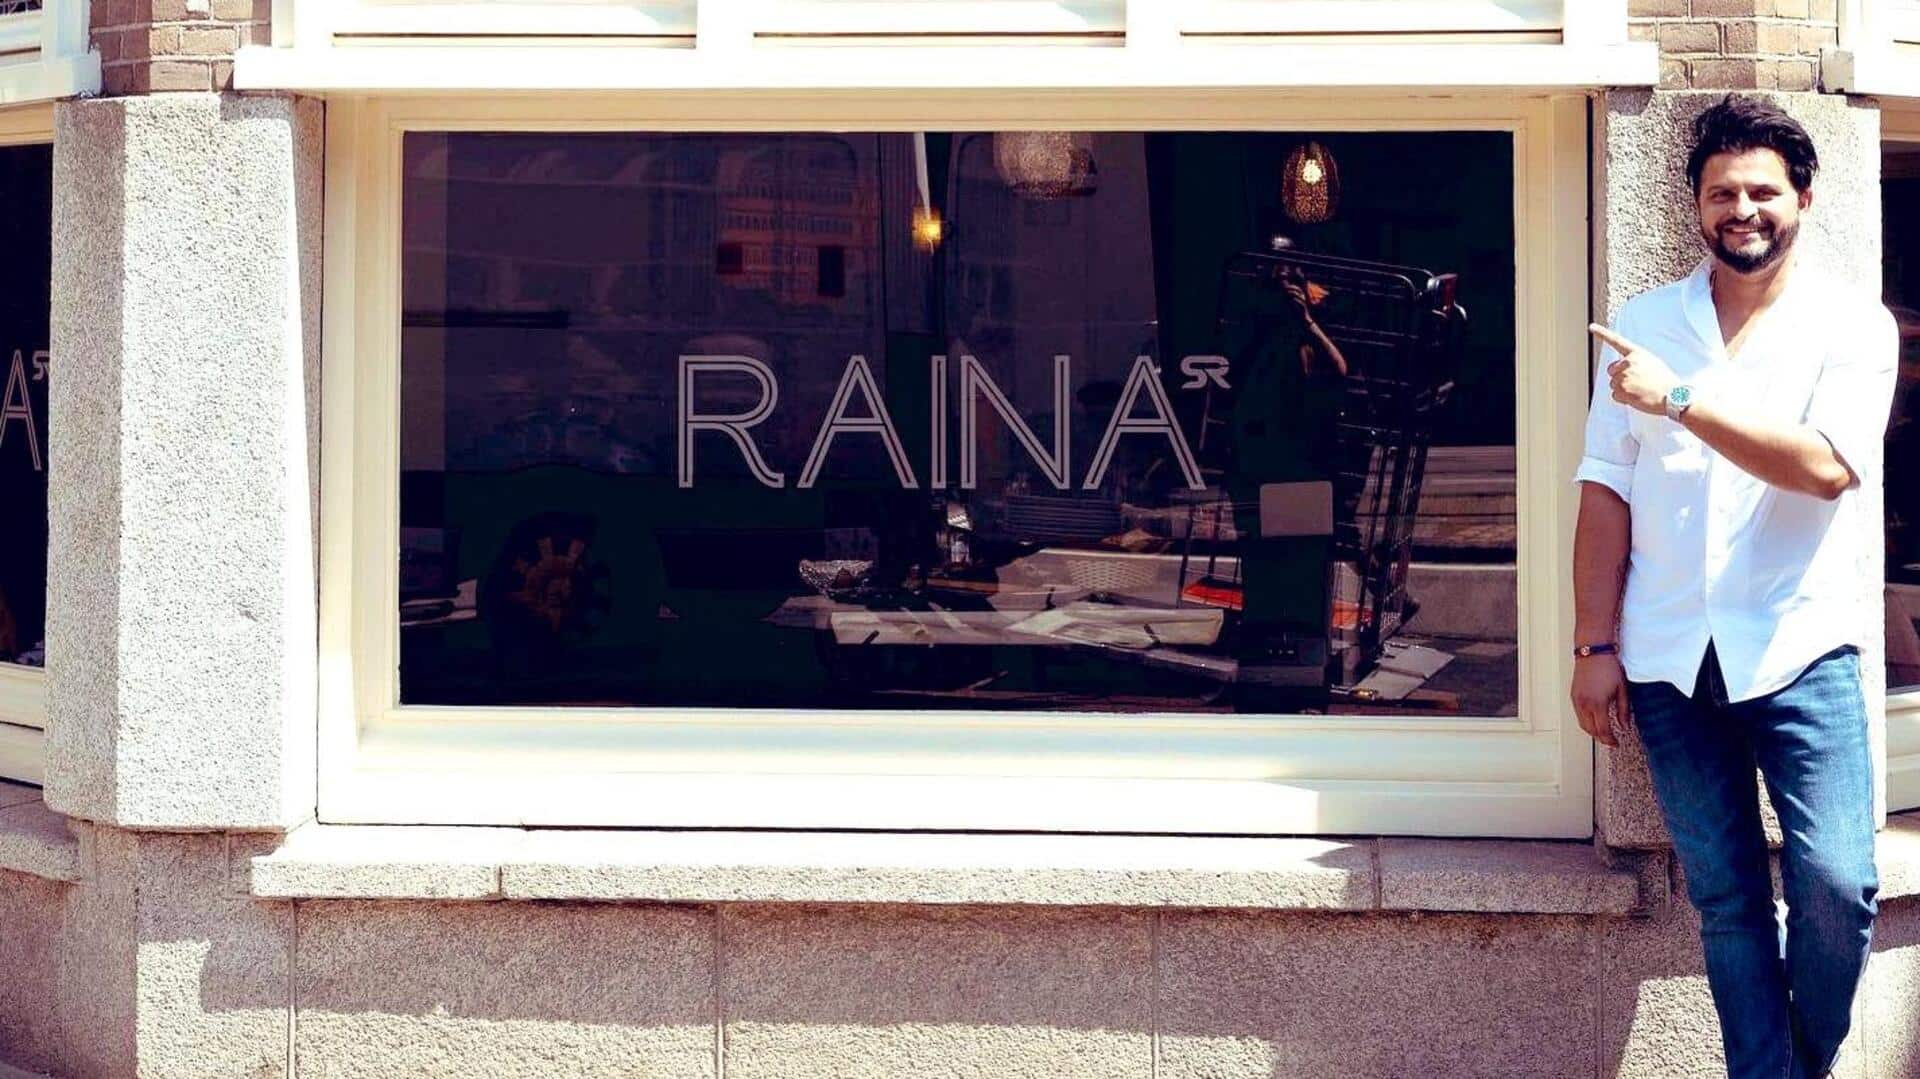 सुरेश रैना ने यूरोप में खोला अपना रेस्टोरेंट, खाना पकाते हुए आए नजर